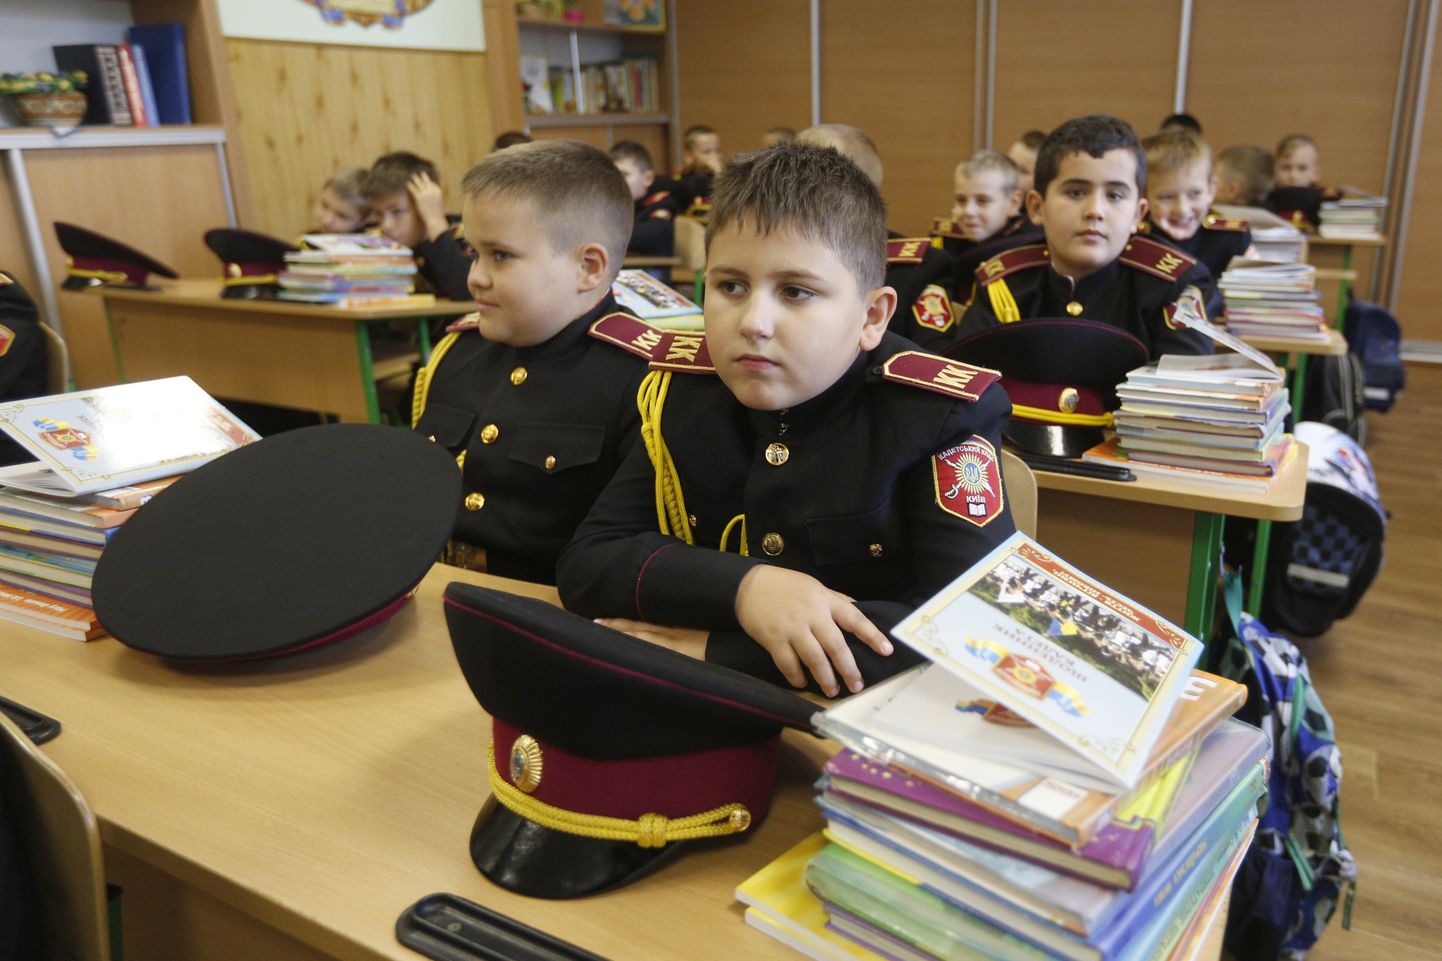 Noored kadetid Kiievis asuvas koolis. Ukraina haridusseaduse muudatus on Ungari vihale ajanud.